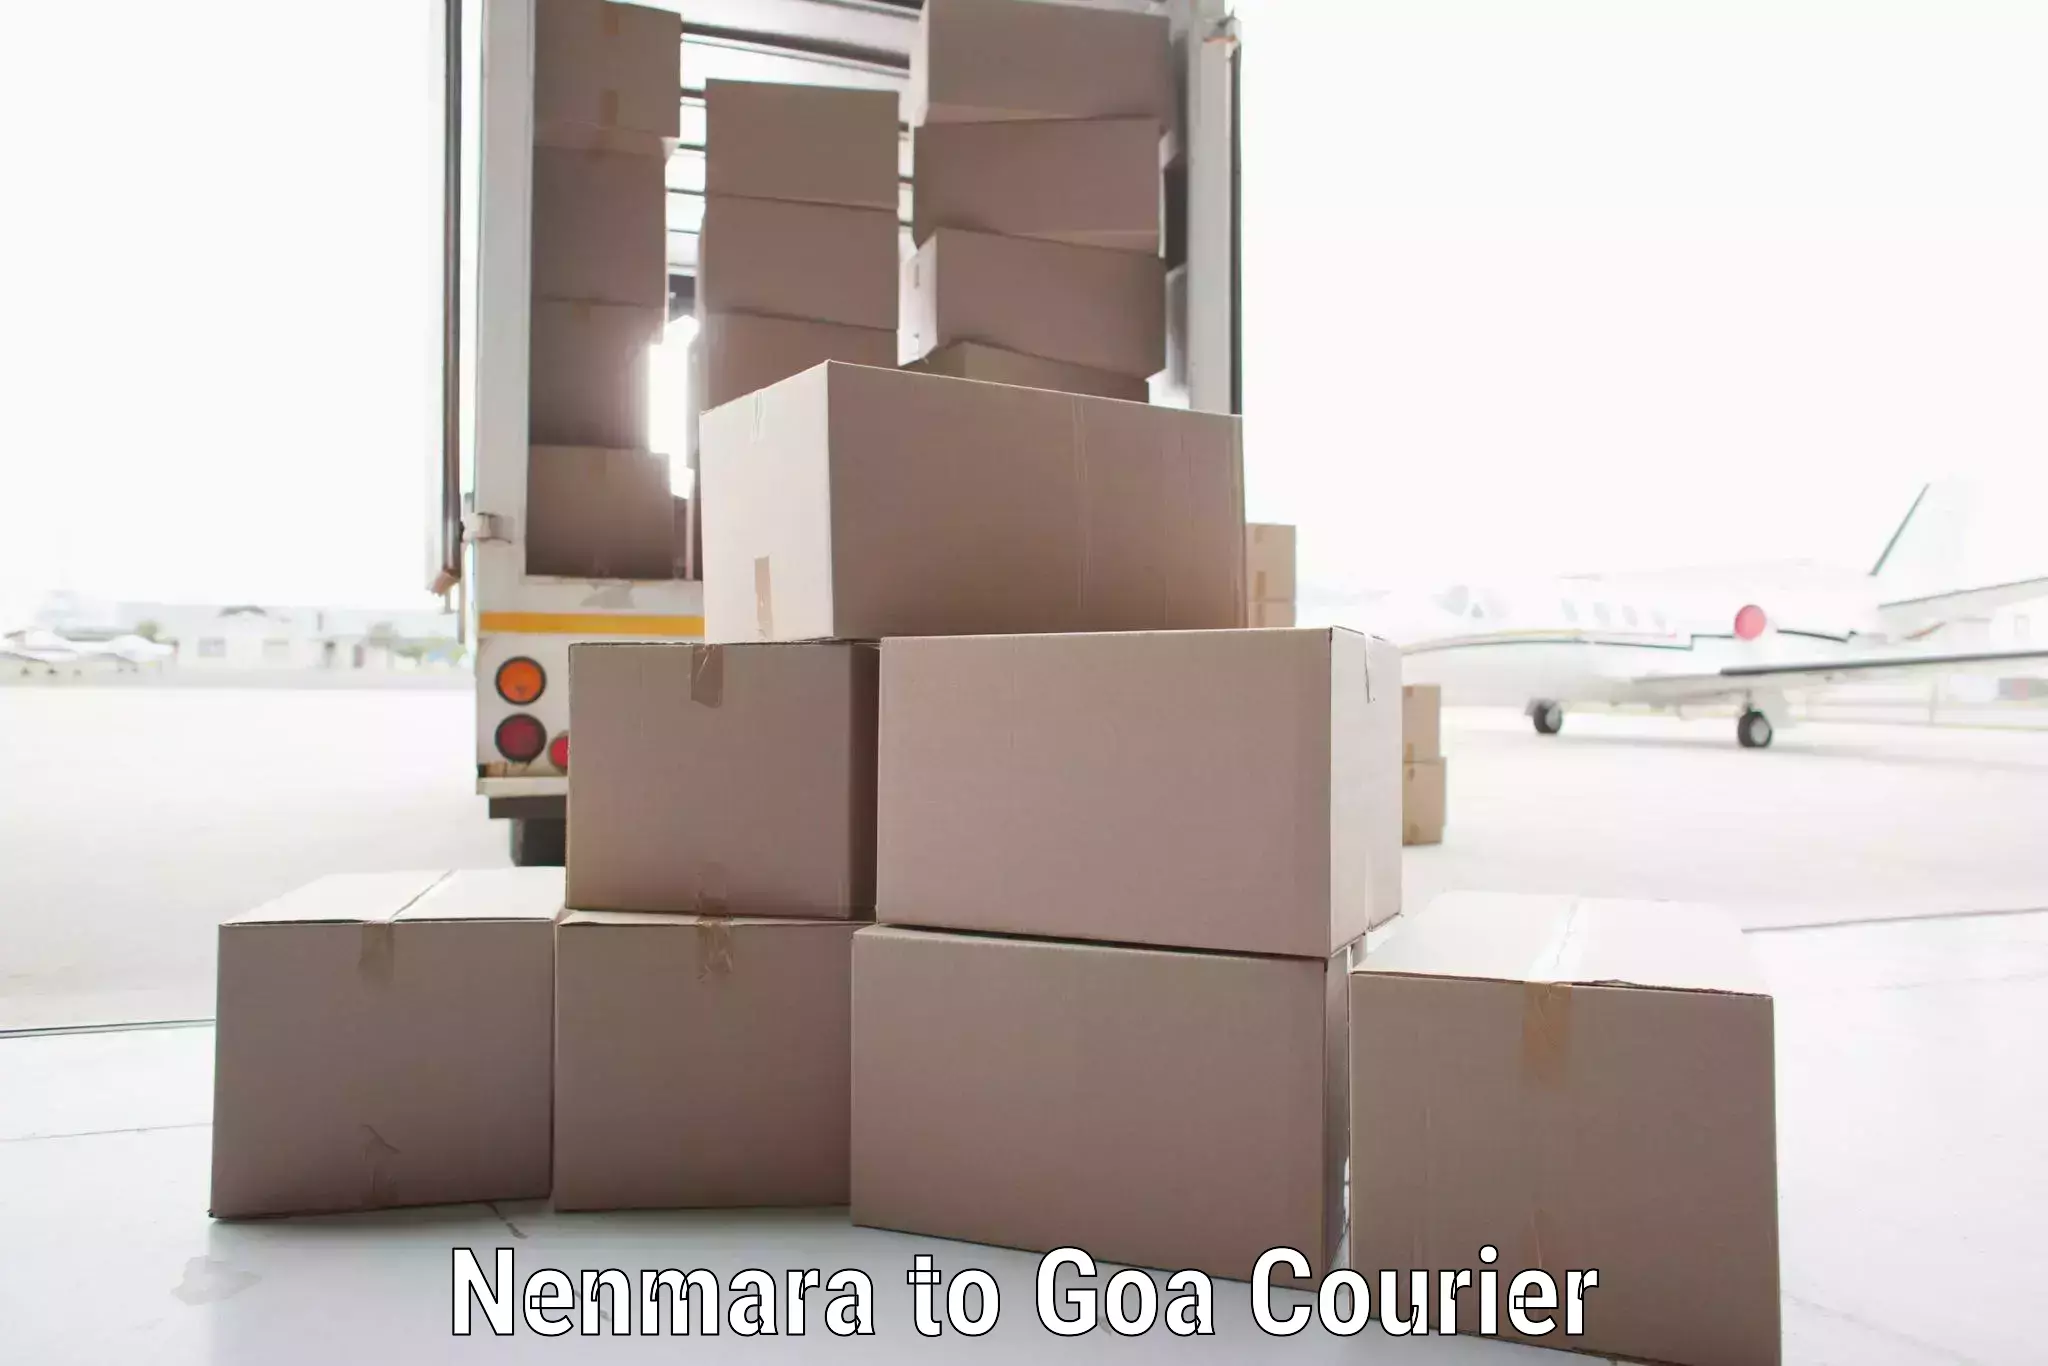 Global courier networks Nenmara to Vasco da Gama